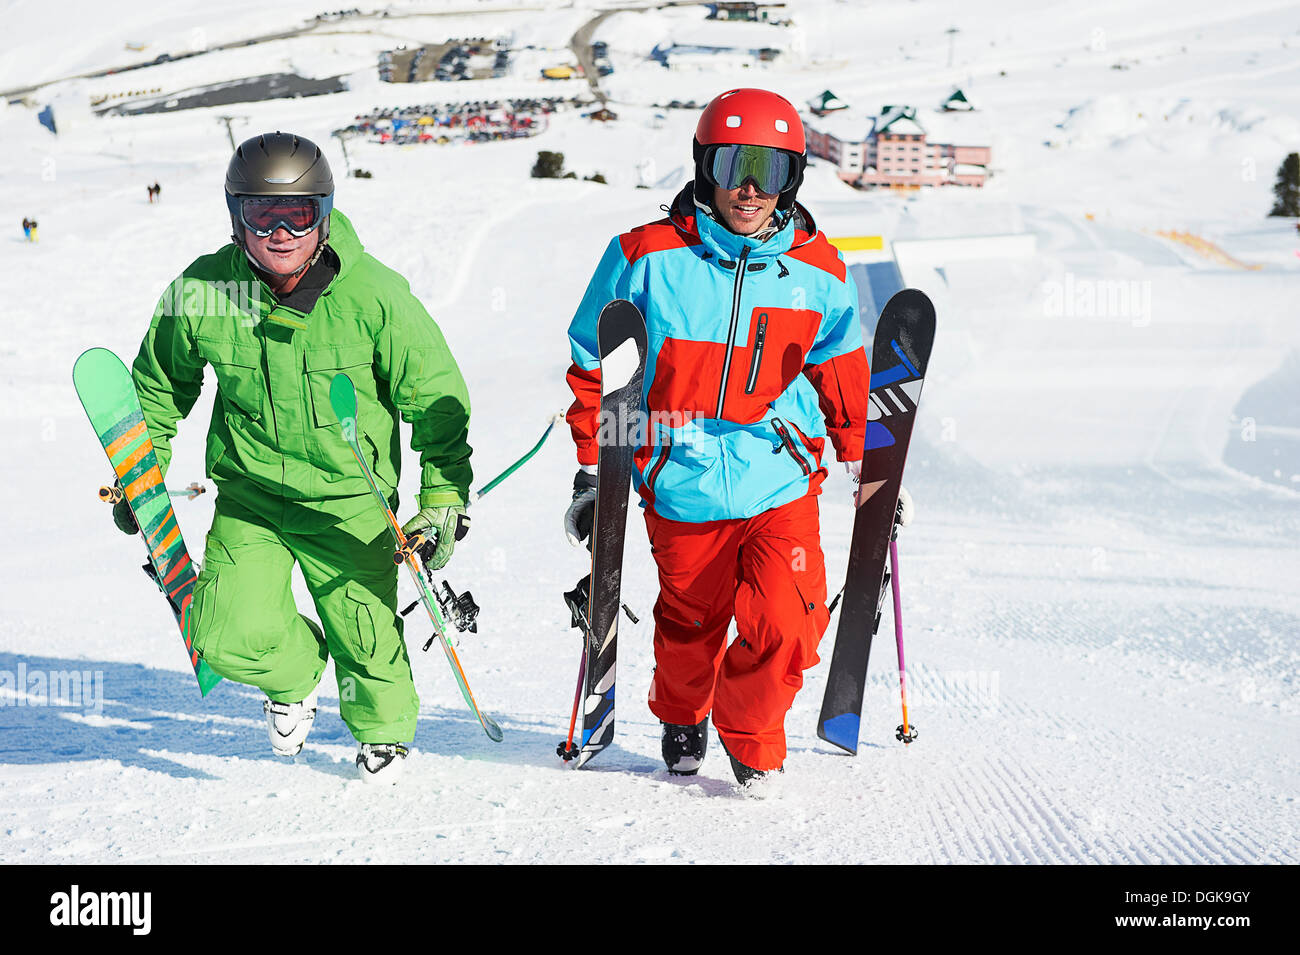 Los esquiadores transportando equipos cuesta arriba Foto de stock